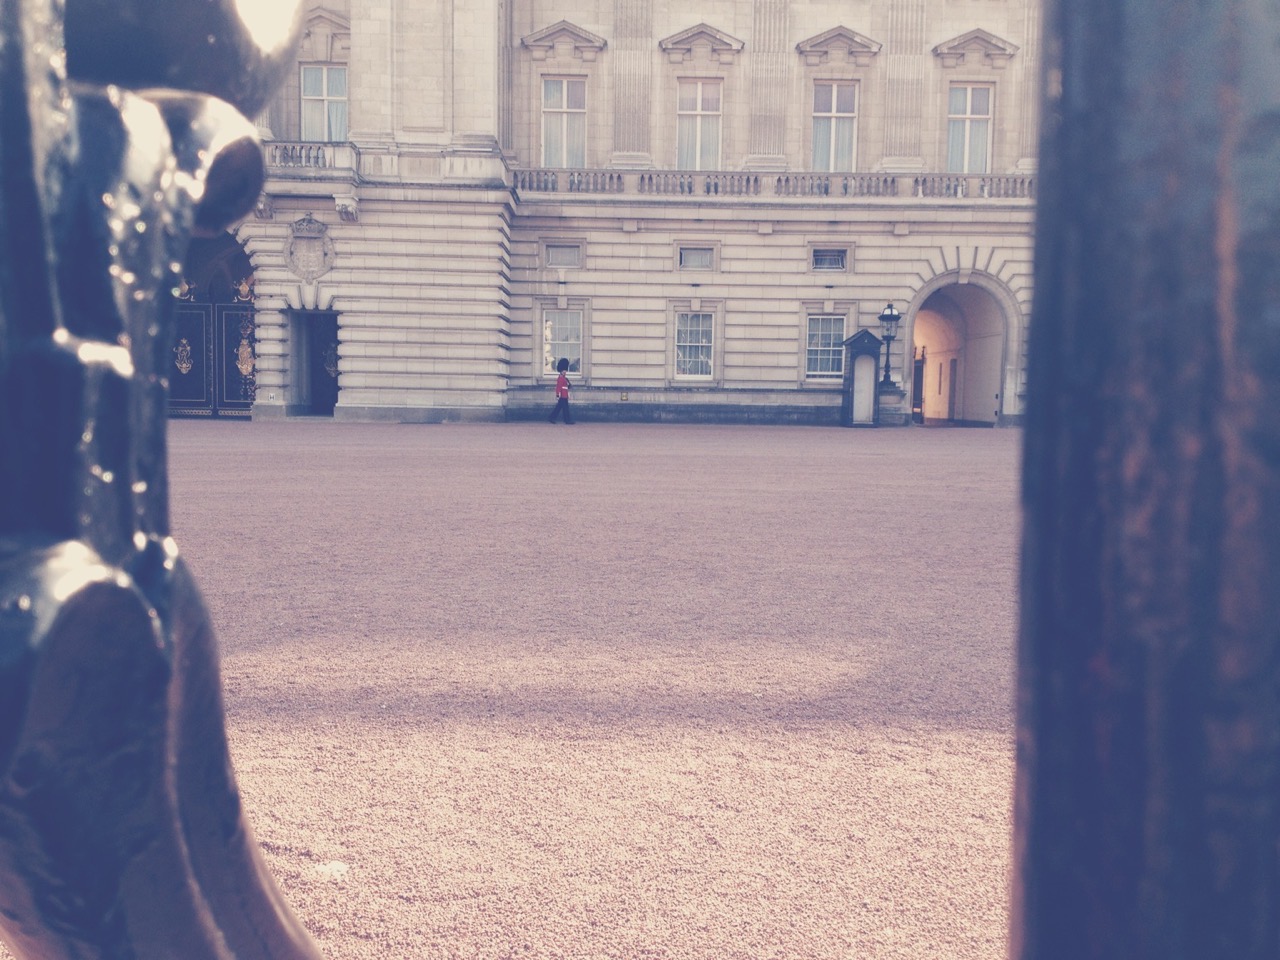 Guard, Buckingham Palace